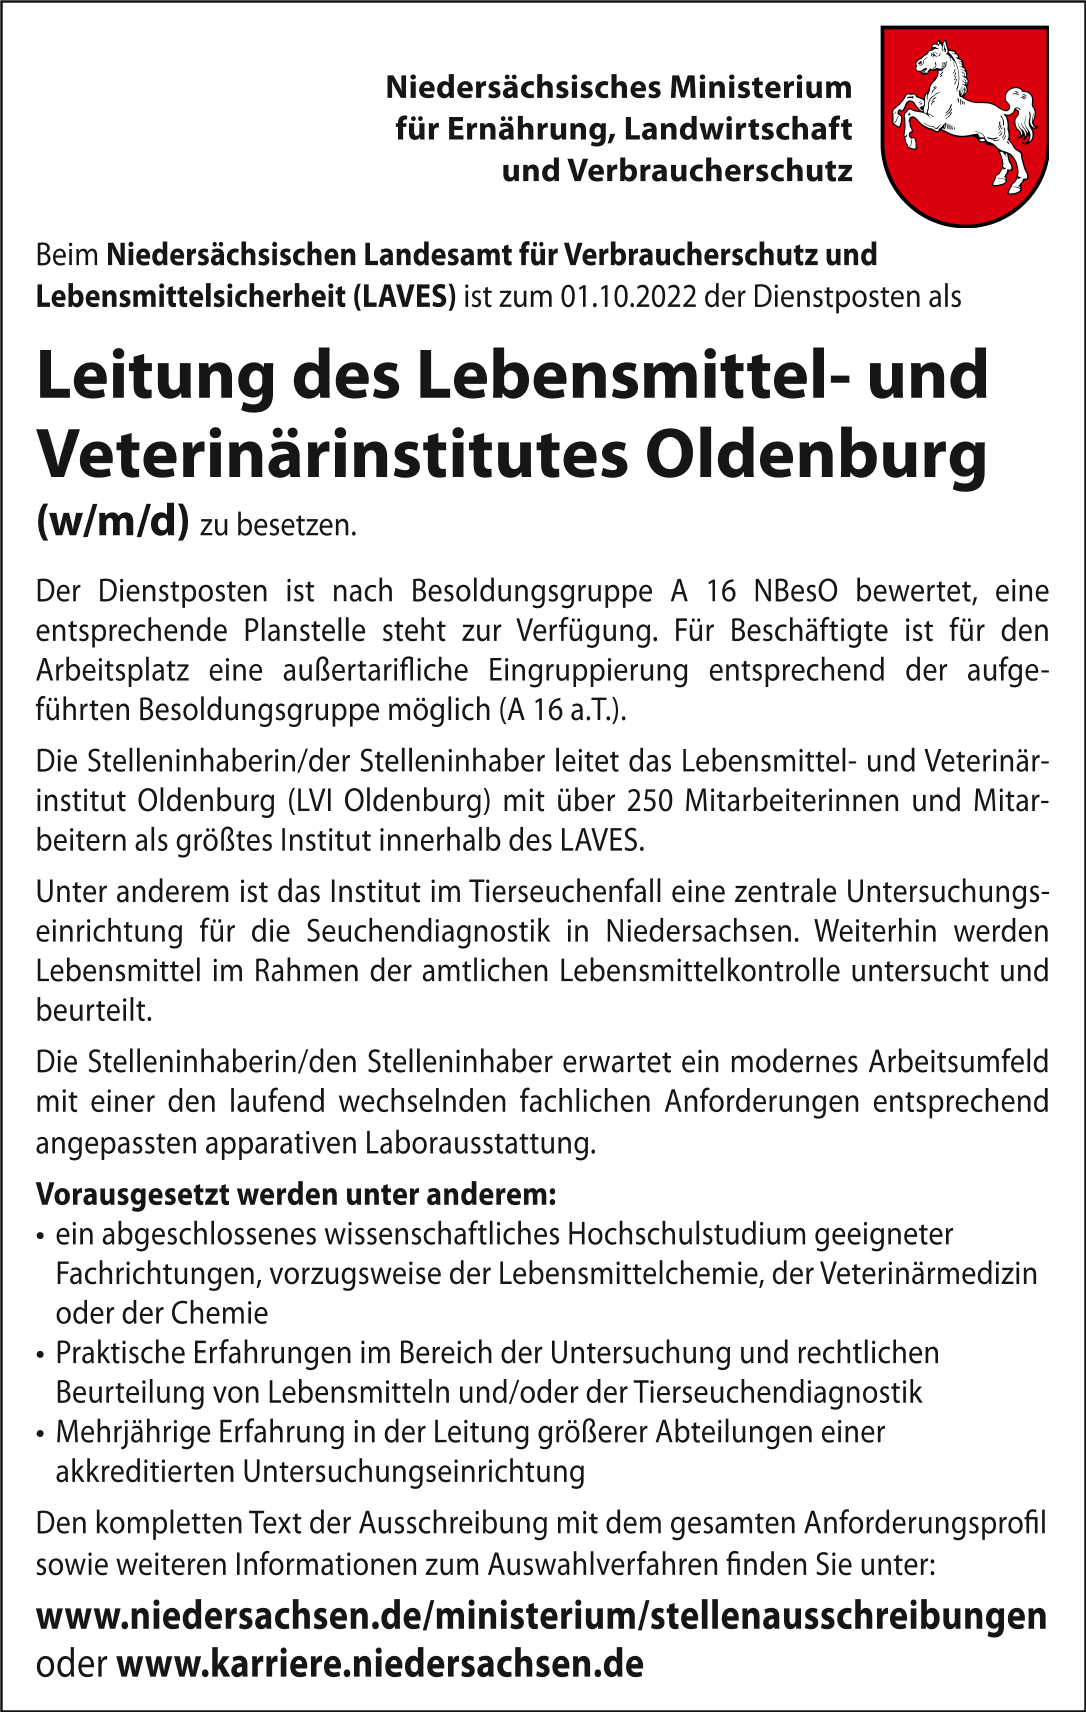 Leitung des Lebensmittel- und Veterinärinstitutes Oldenburg (m/w/d)